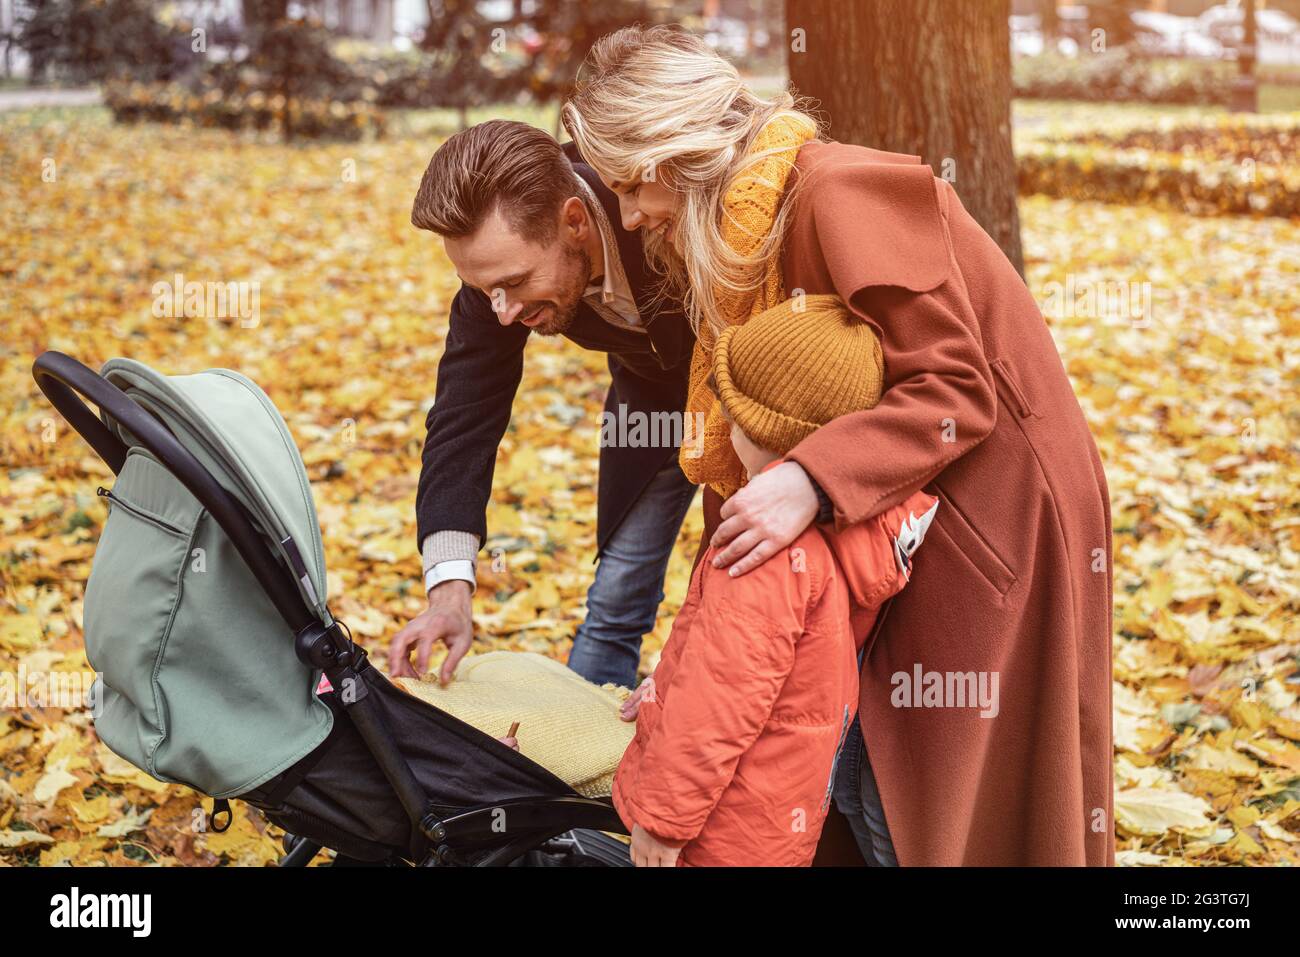 Eine junge Familie geht mit einem Sohn und einem Neugeborenen im Kinderwagen in einem Herbstpark spazieren. Familie im Freien in einem goldenen Herbstpark Stockfoto